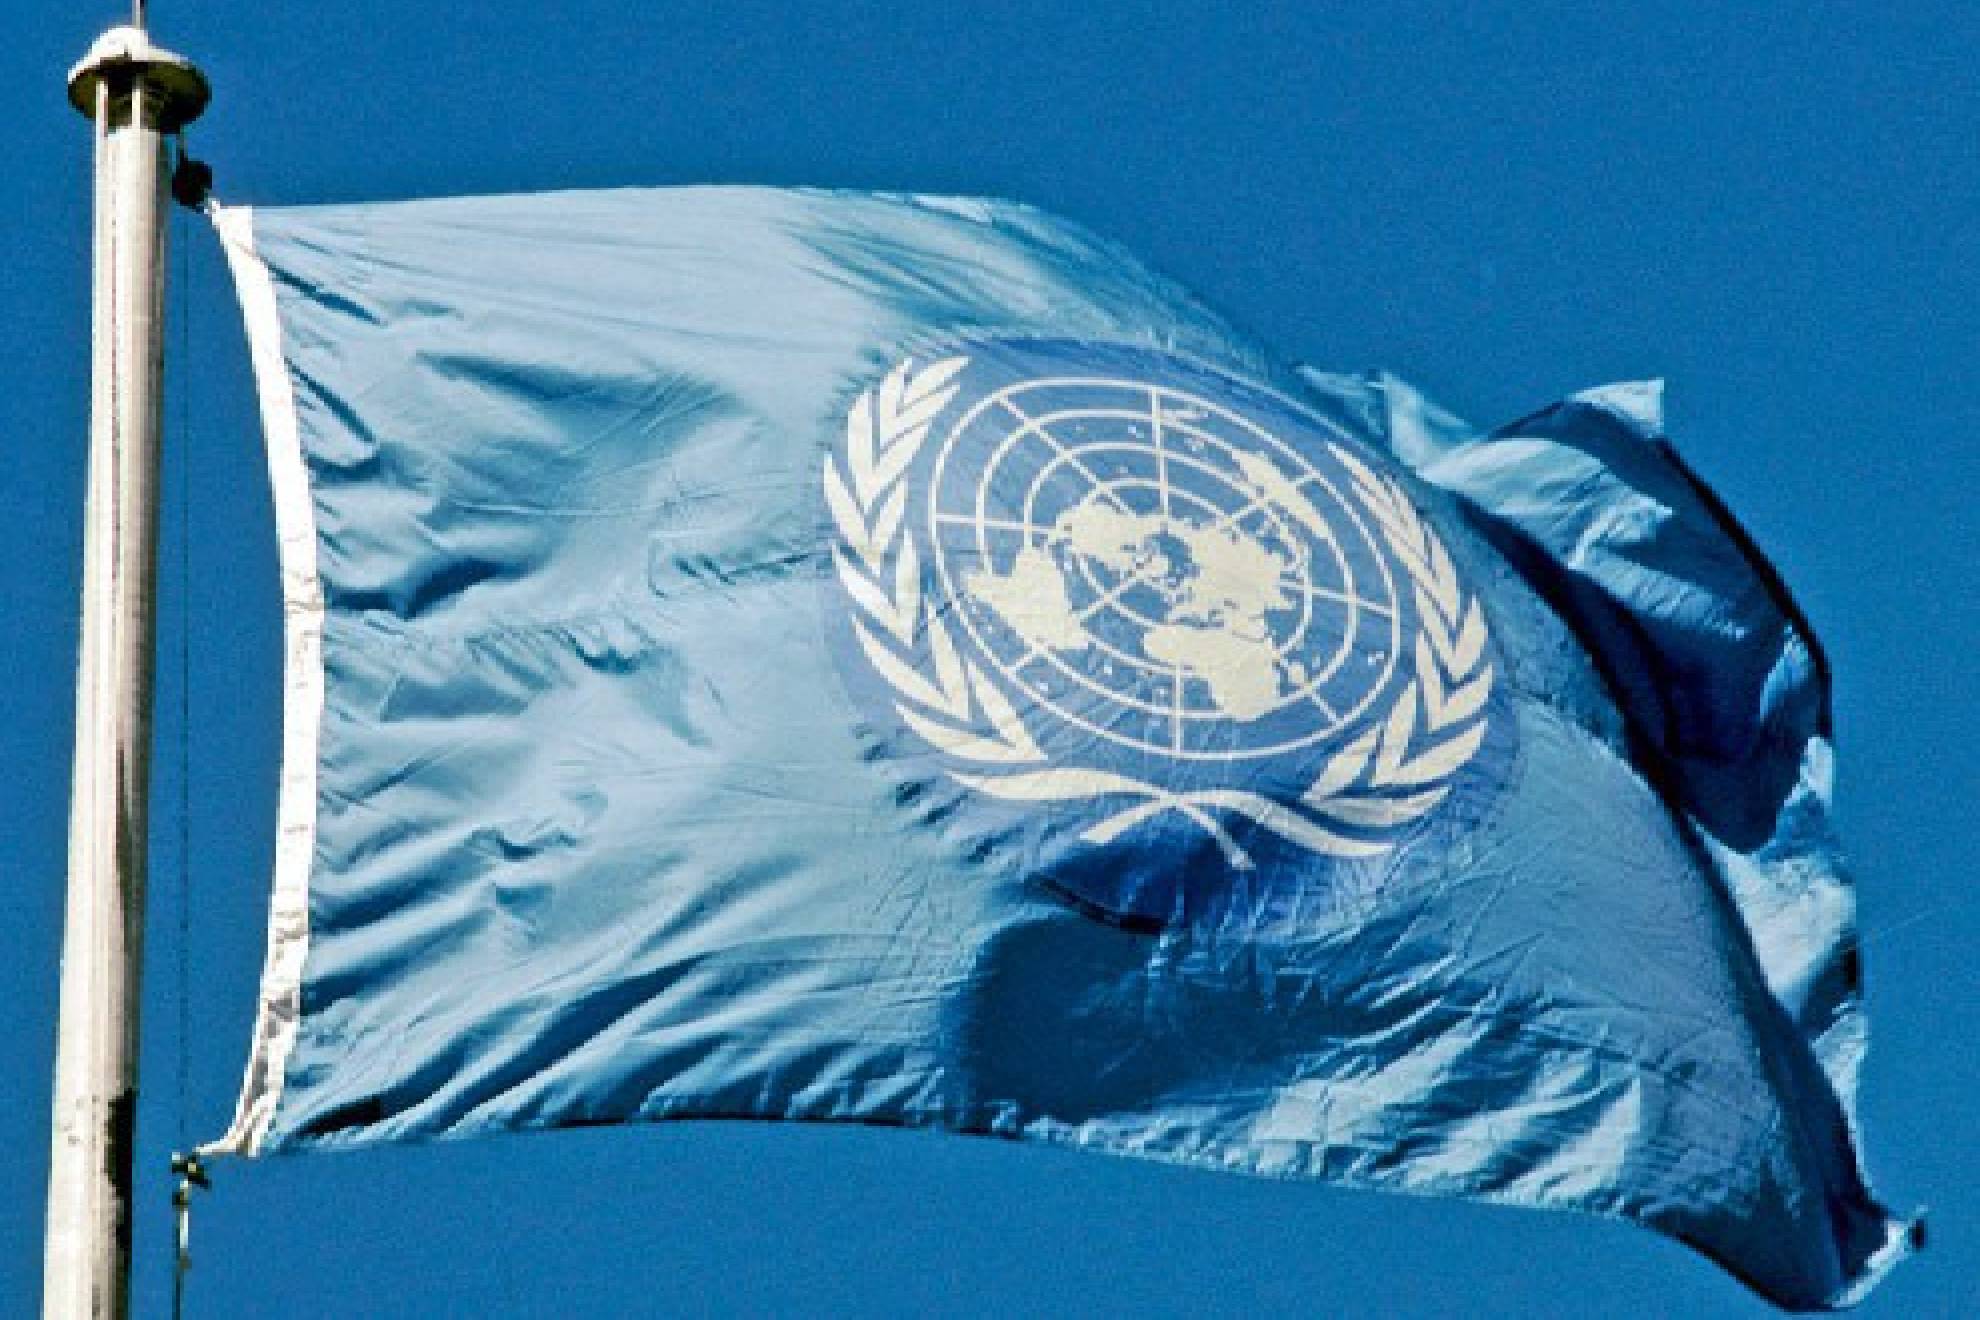 Irn ha justificado sus ataques contra Israel debido al Artculo 51 de la ONU.